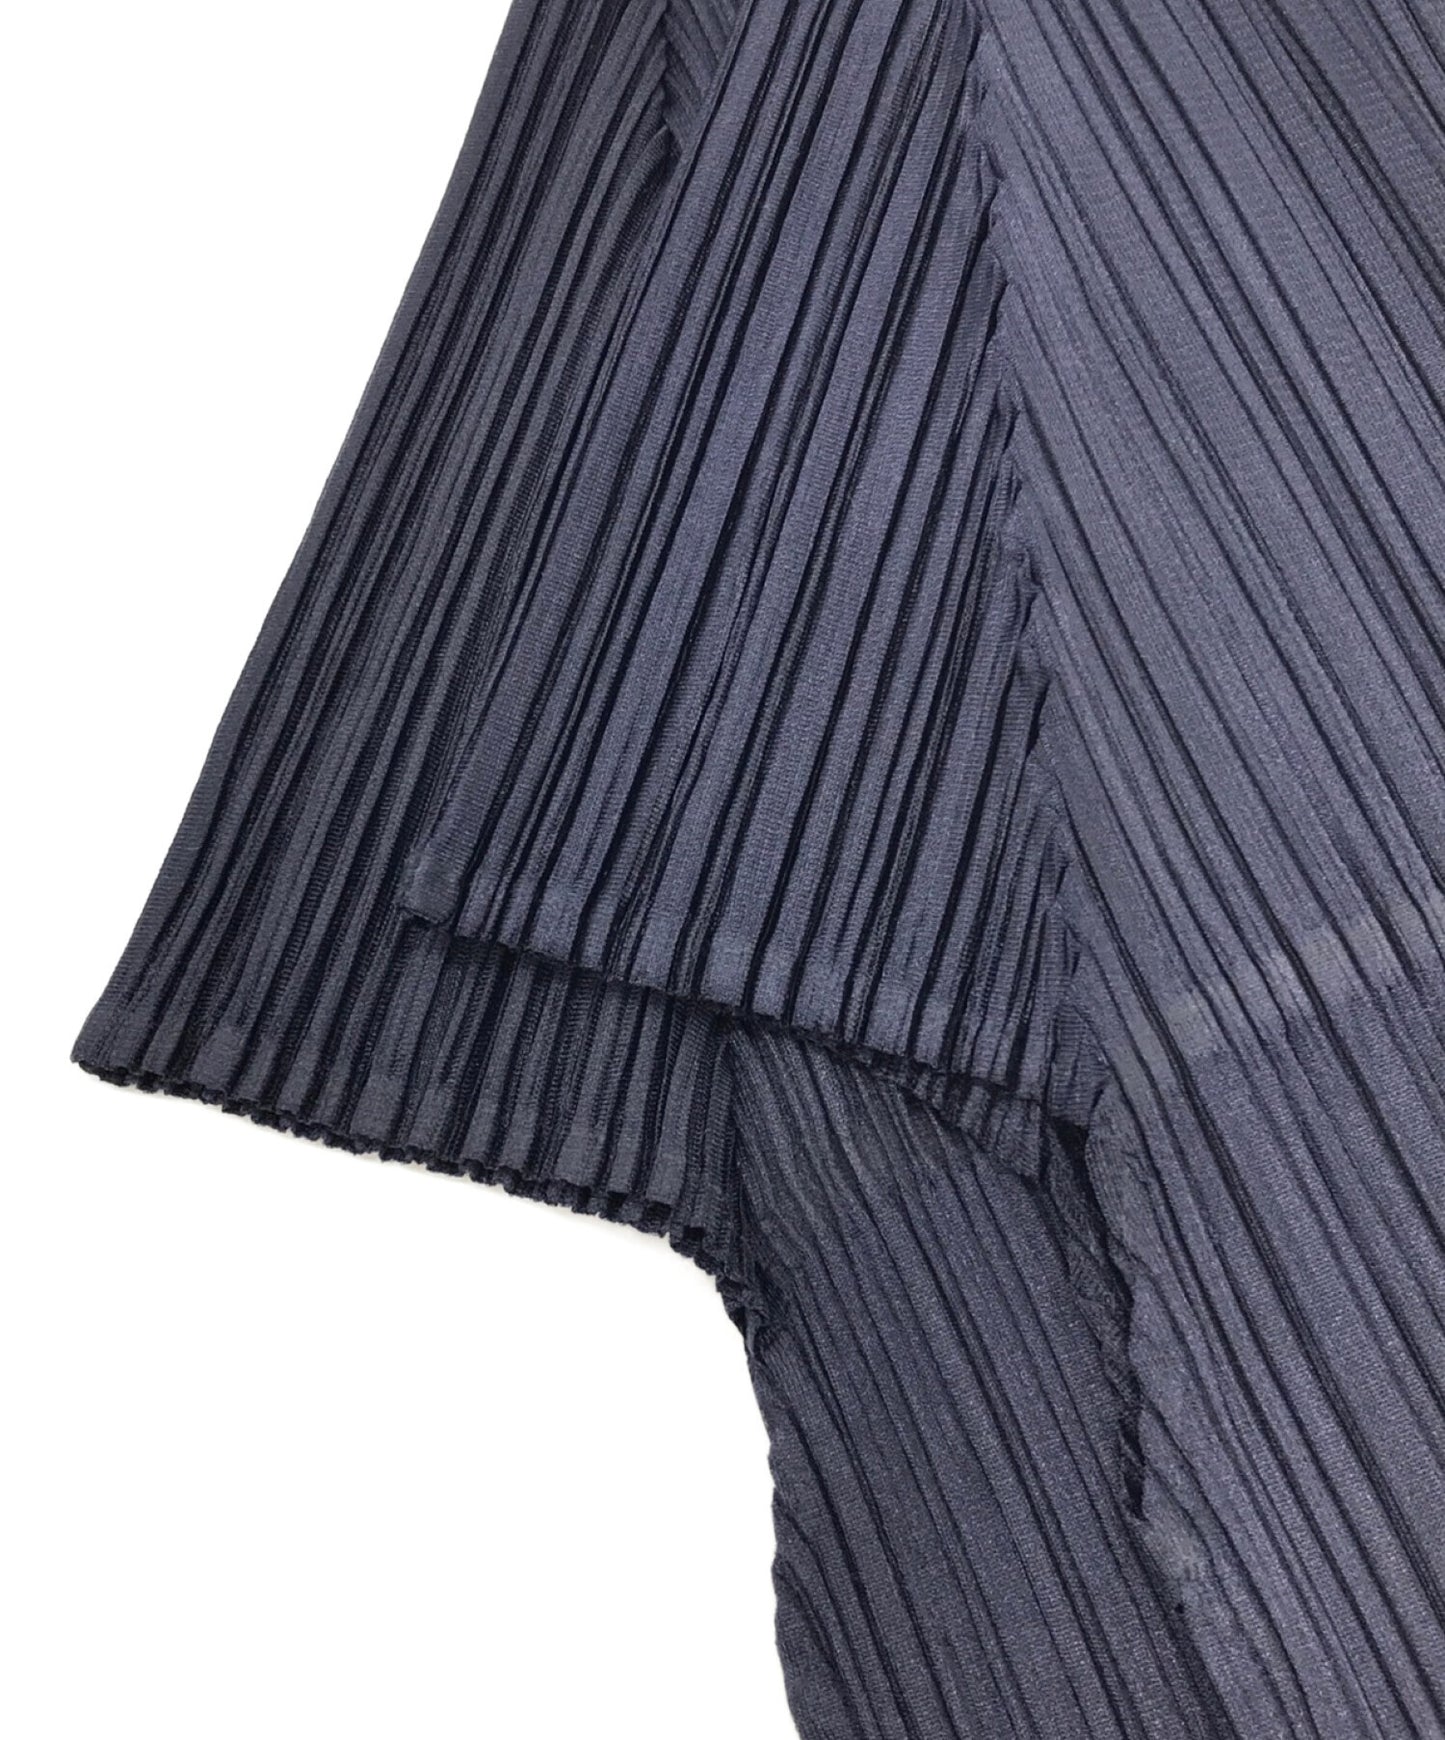 褶皺請切割和縫製下擺的褶皺切割，縫製和縫製短袖切割和縫製短袖pp21-jk521